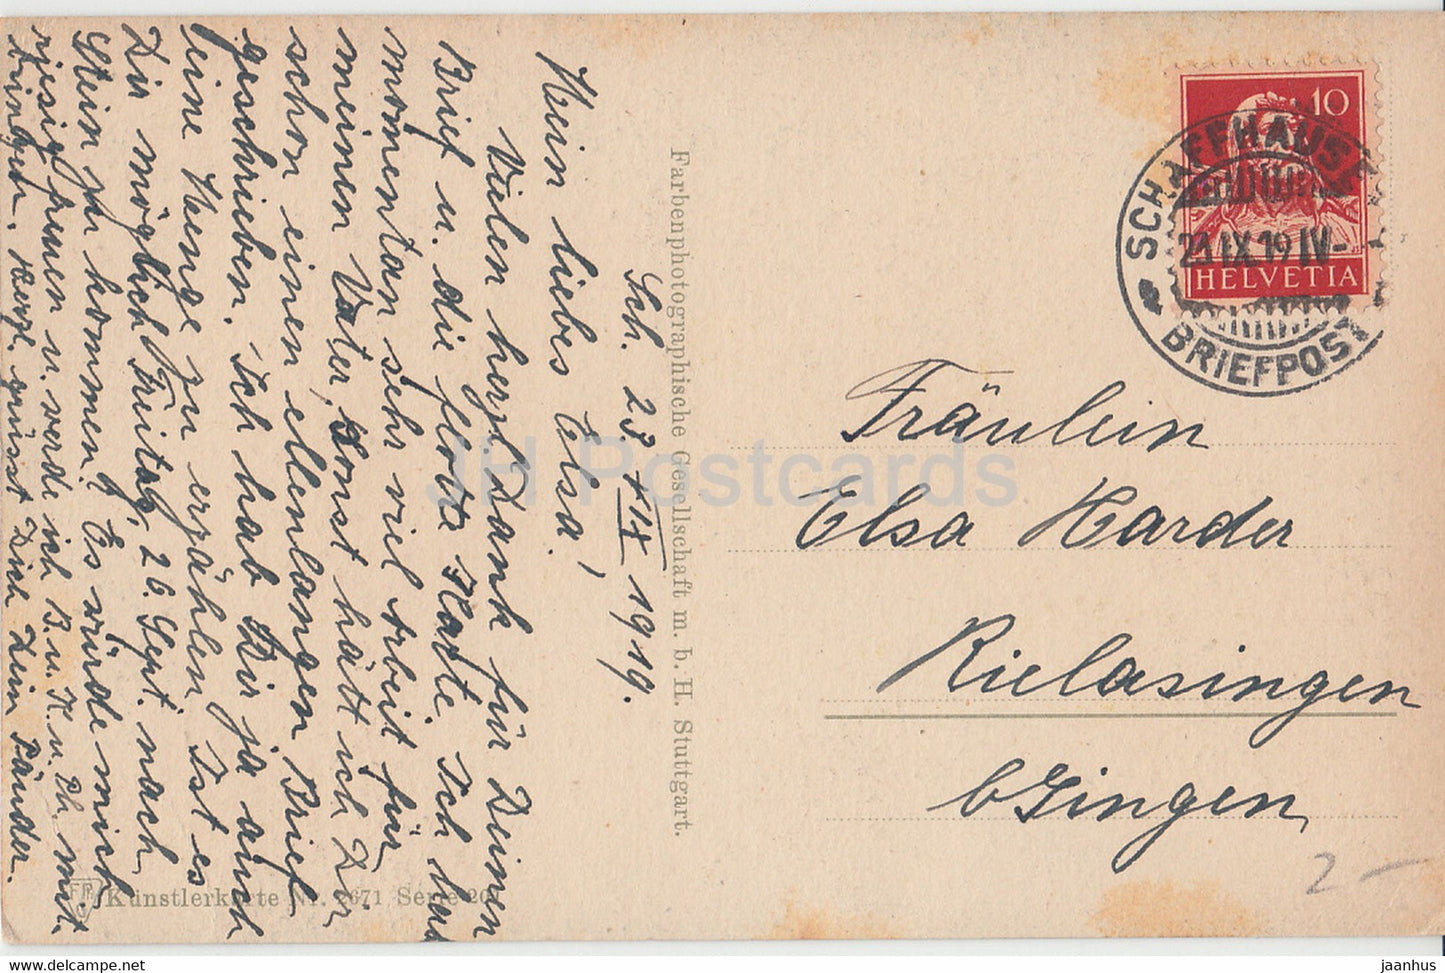 Wassermühle - Straße - Künstlerkarte - 2671 - Serie 201 - FPG - alte Postkarte - 1919 - Deutschland - gebraucht